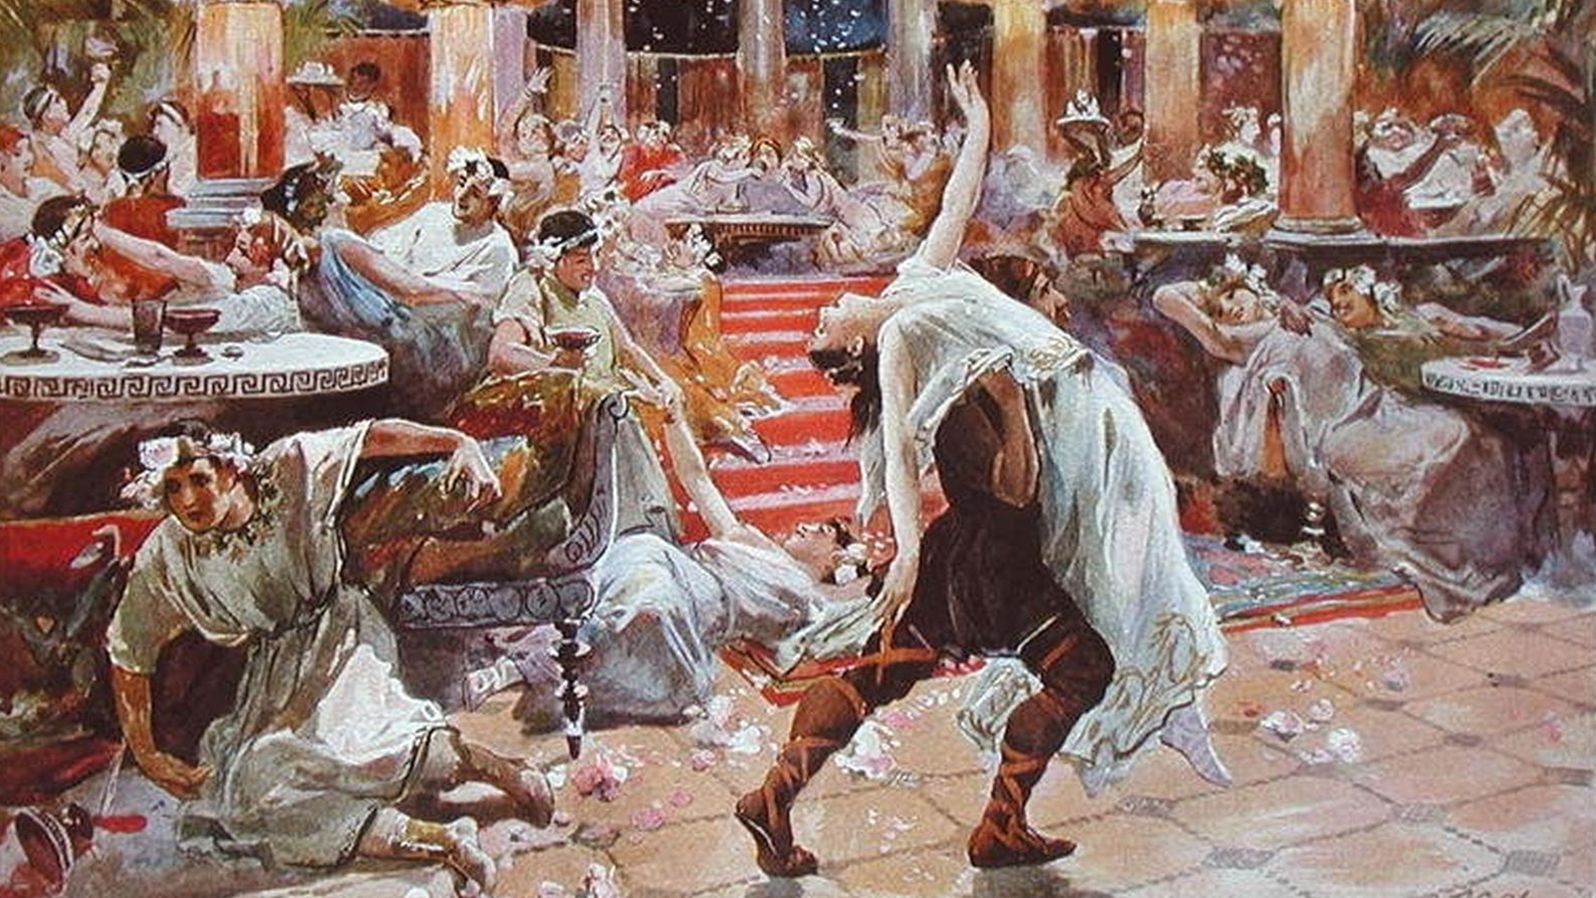 Gas Gas Hada Sex Videos - The ancient Roman banquet celebrated shock, awe and carpe diem | CNN